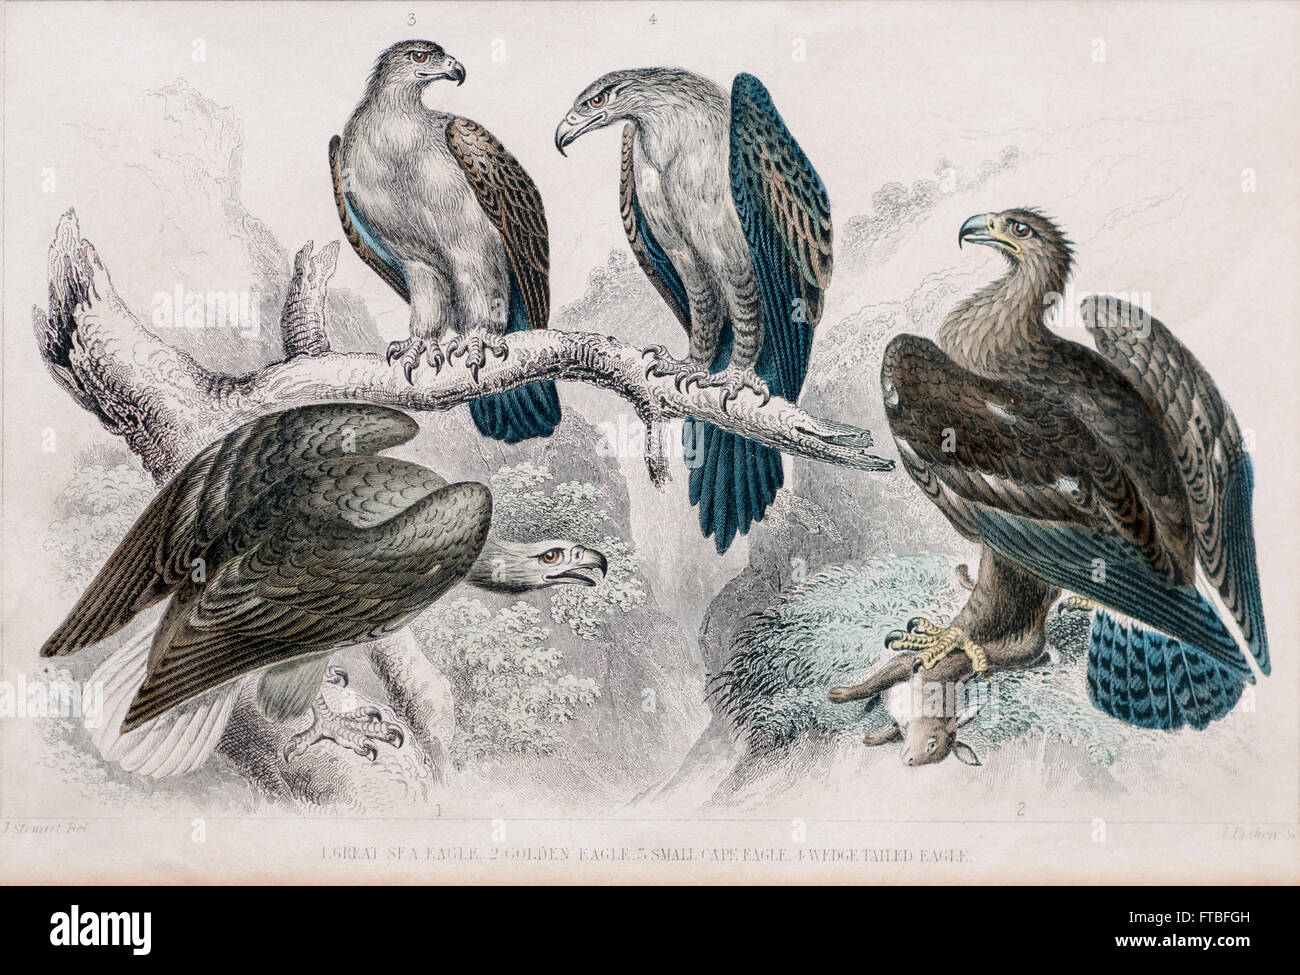 1866 oiseaux aigle orfèvre imprimer No2 (Great Sea Eagle, l'Aigle royal, le petit cap, Wedge Eagle Eagle Tail) colorié à la main engravin Banque D'Images